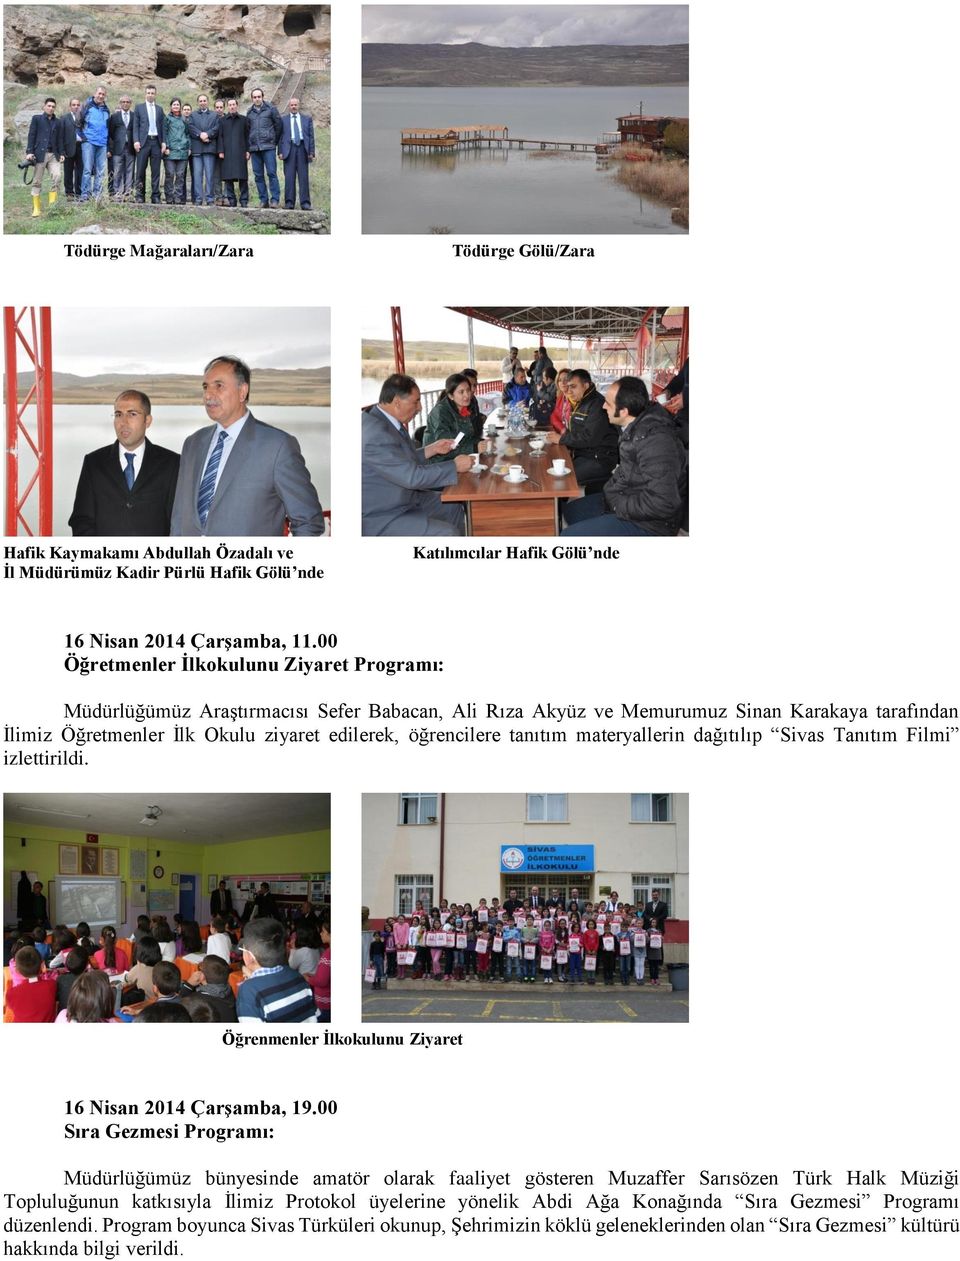 tanıtım materyallerin dağıtılıp Sivas Tanıtım Filmi izlettirildi. Öğrenmenler İlkokulunu Ziyaret 16 Nisan 2014 Çarşamba, 19.